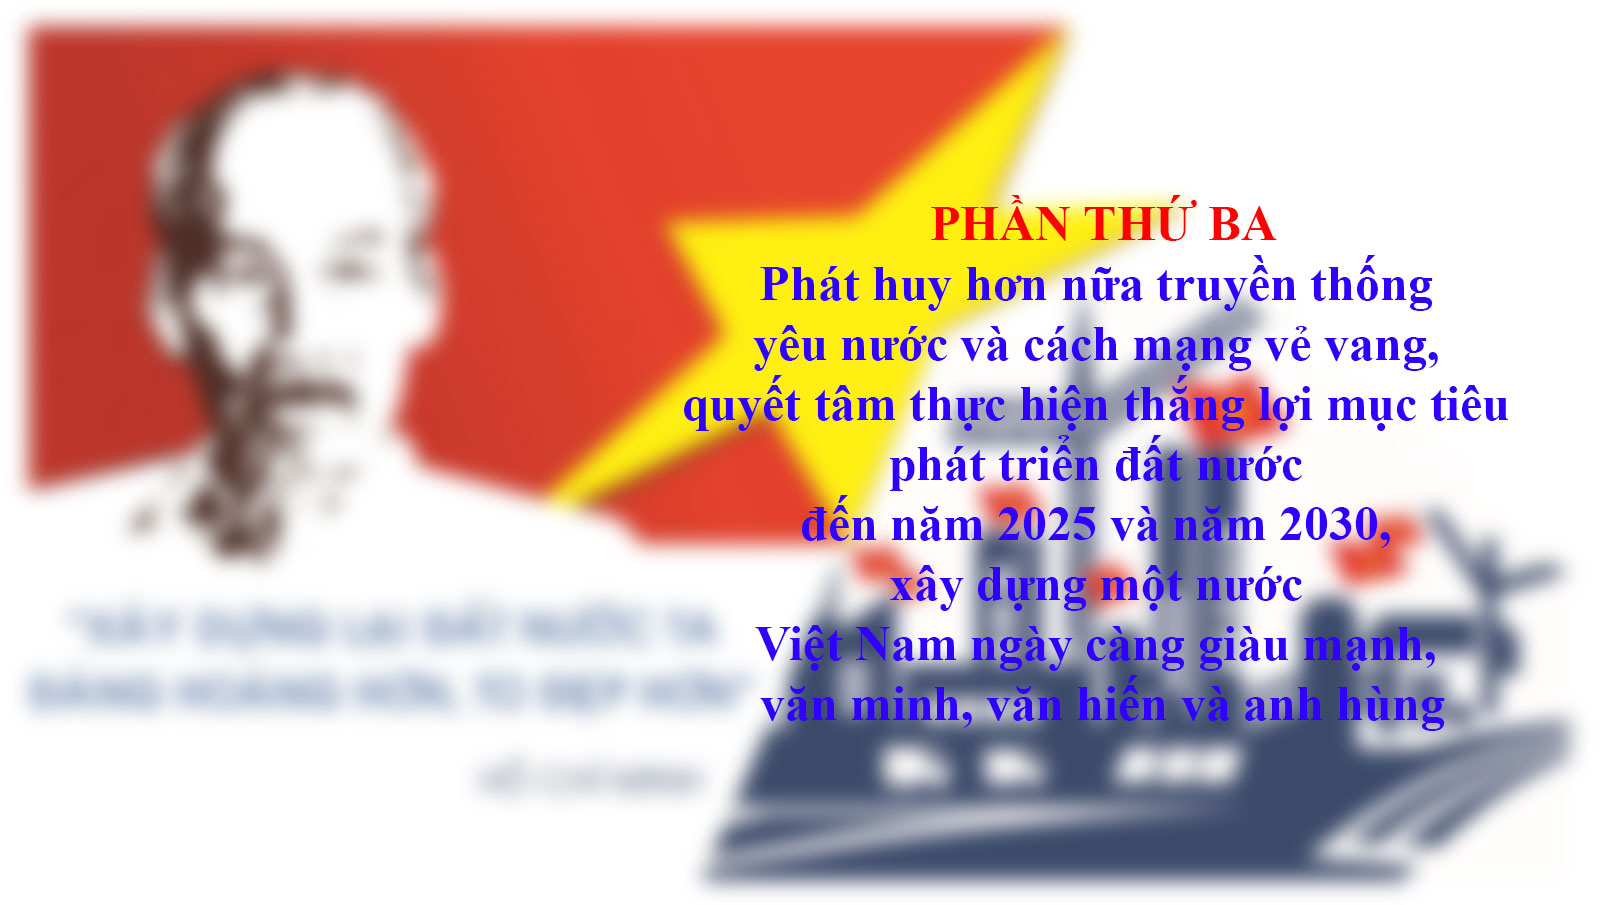 Tự hào, tin tưởng dưới lá cờ vẻ vang của Đảng, quyết tâm xây dựng một nước Việt Nam ngày càng giàu mạnh, văn minh, văn hiến và anh hùng- Ảnh 15.